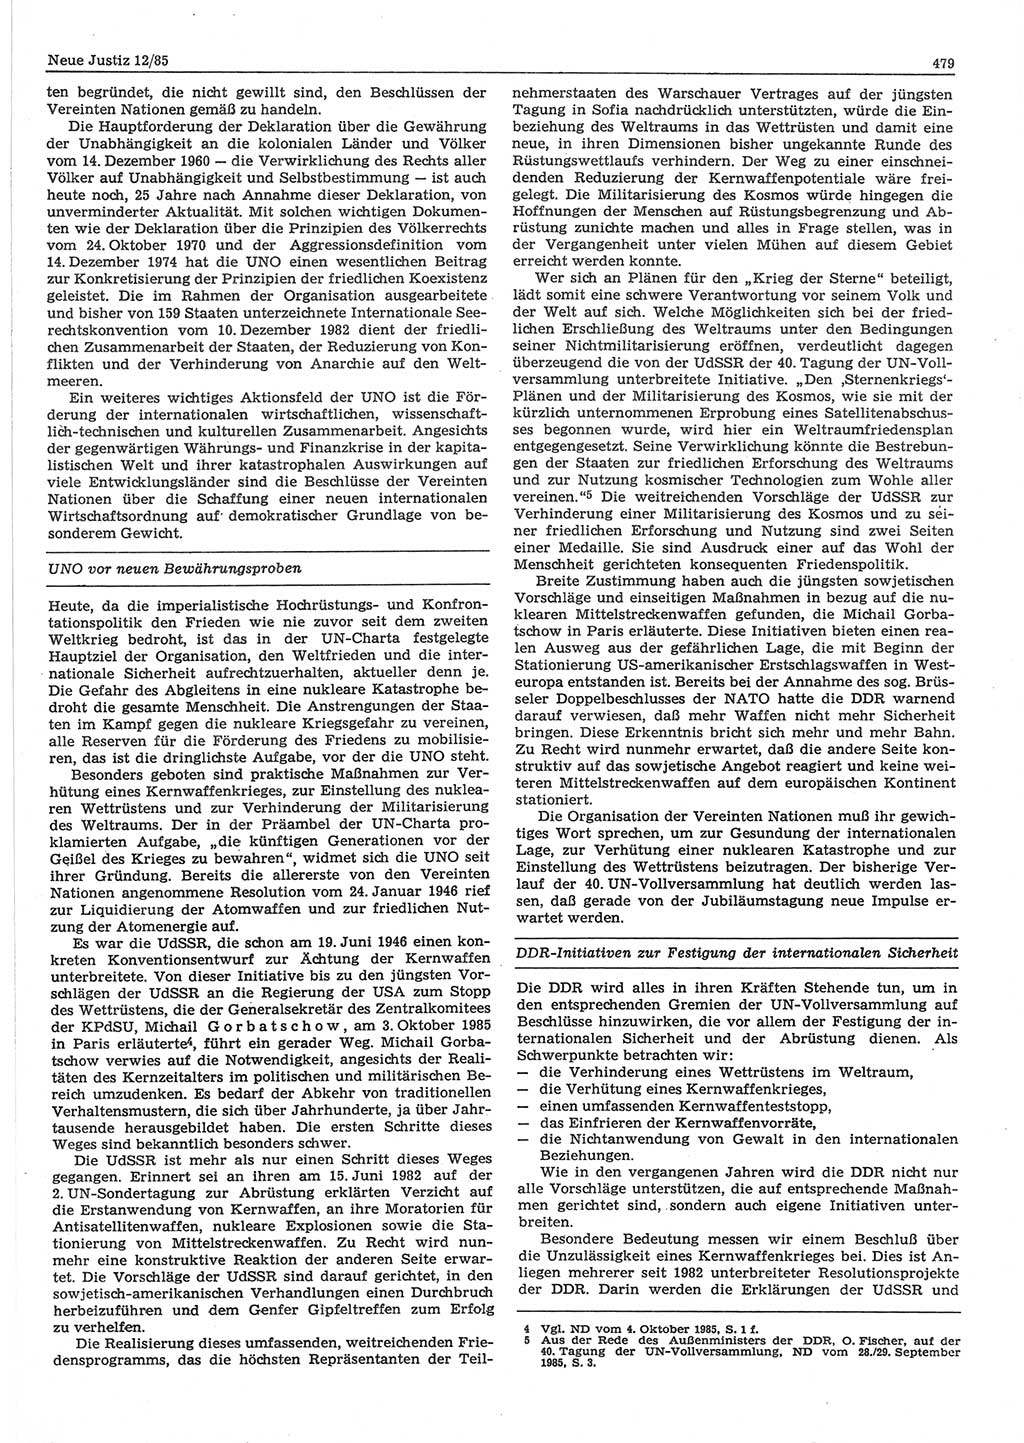 Neue Justiz (NJ), Zeitschrift für sozialistisches Recht und Gesetzlichkeit [Deutsche Demokratische Republik (DDR)], 39. Jahrgang 1985, Seite 479 (NJ DDR 1985, S. 479)